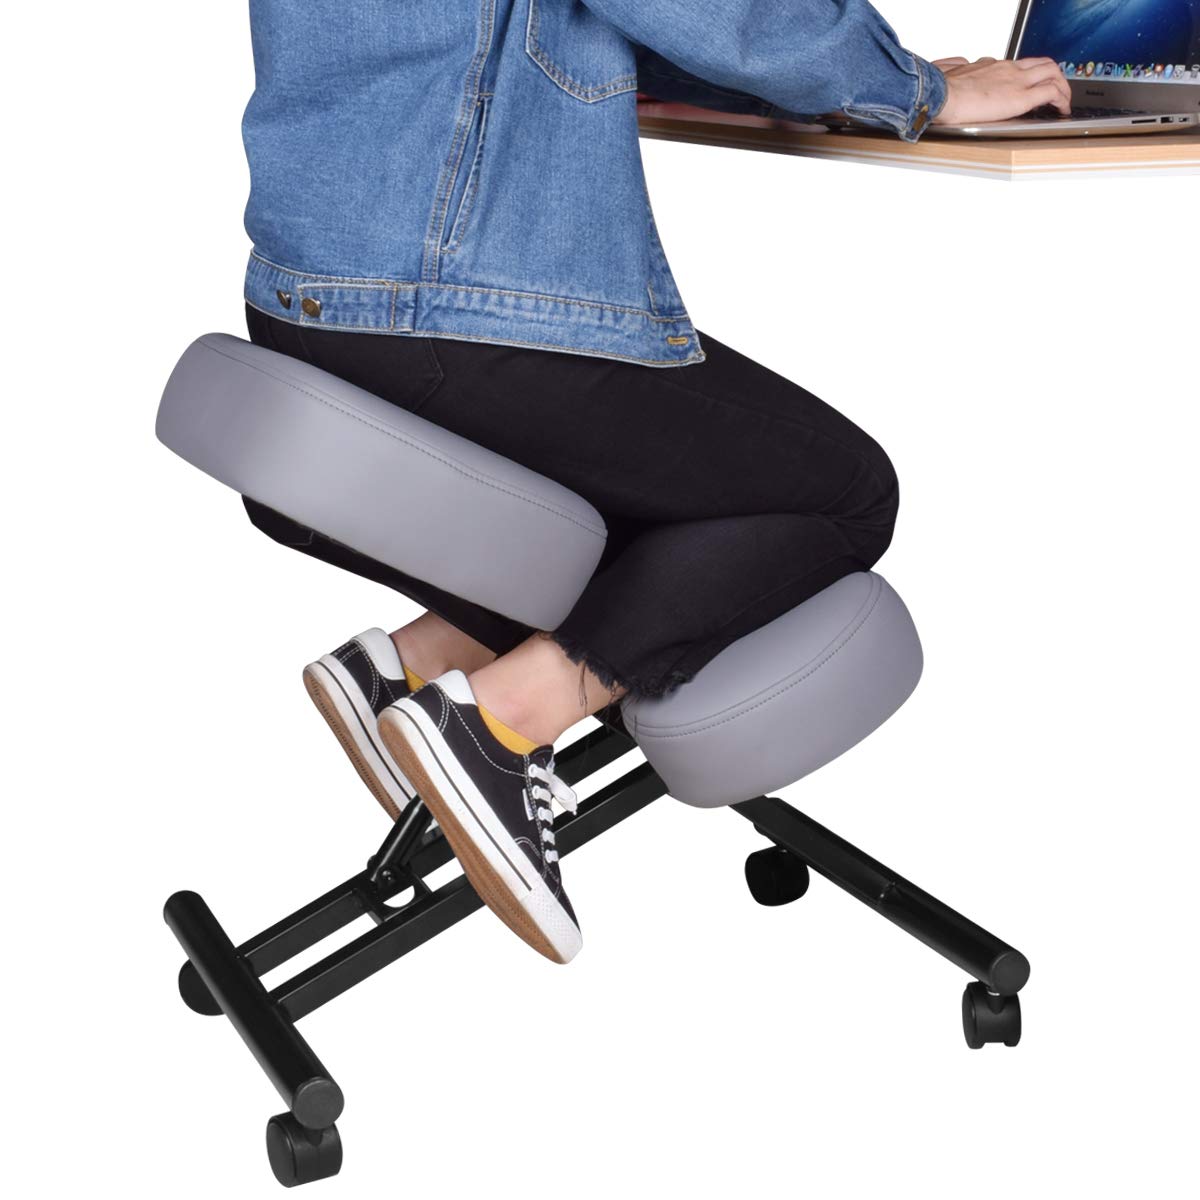 White Adjustable Ergonomic Kneeling Chair – Dragonn, 41% OFF